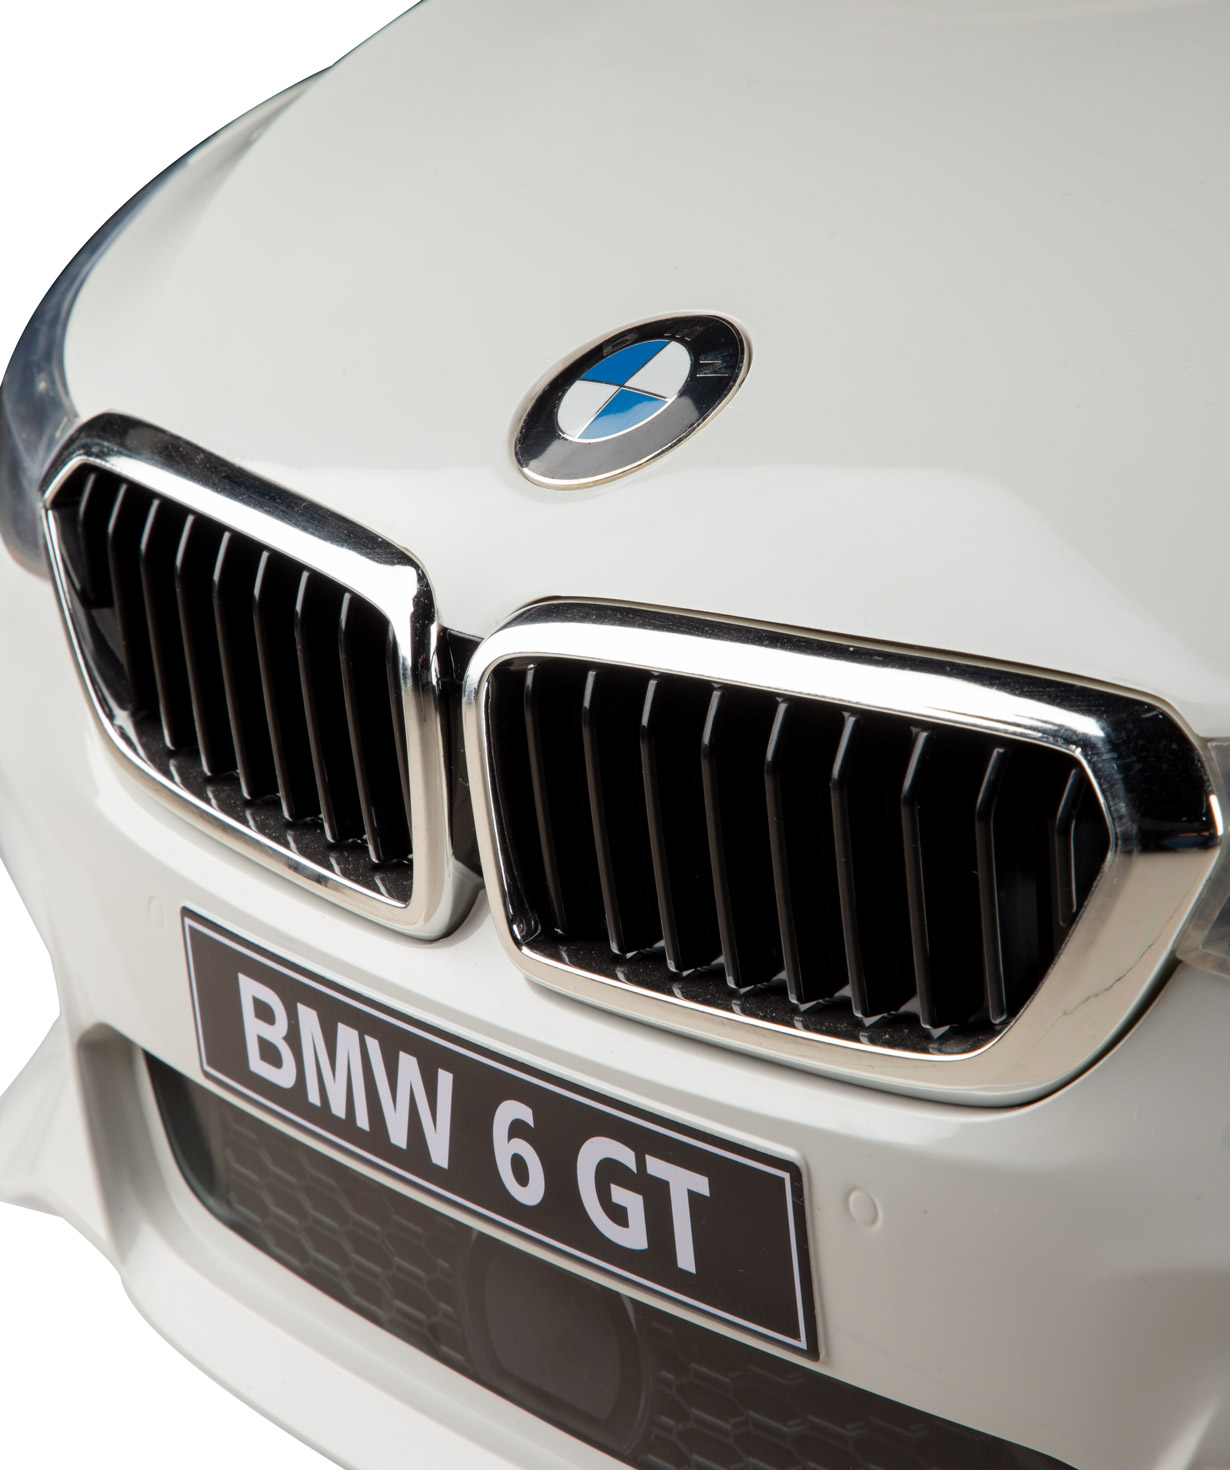 Автомобиль BMW 6 GT детский